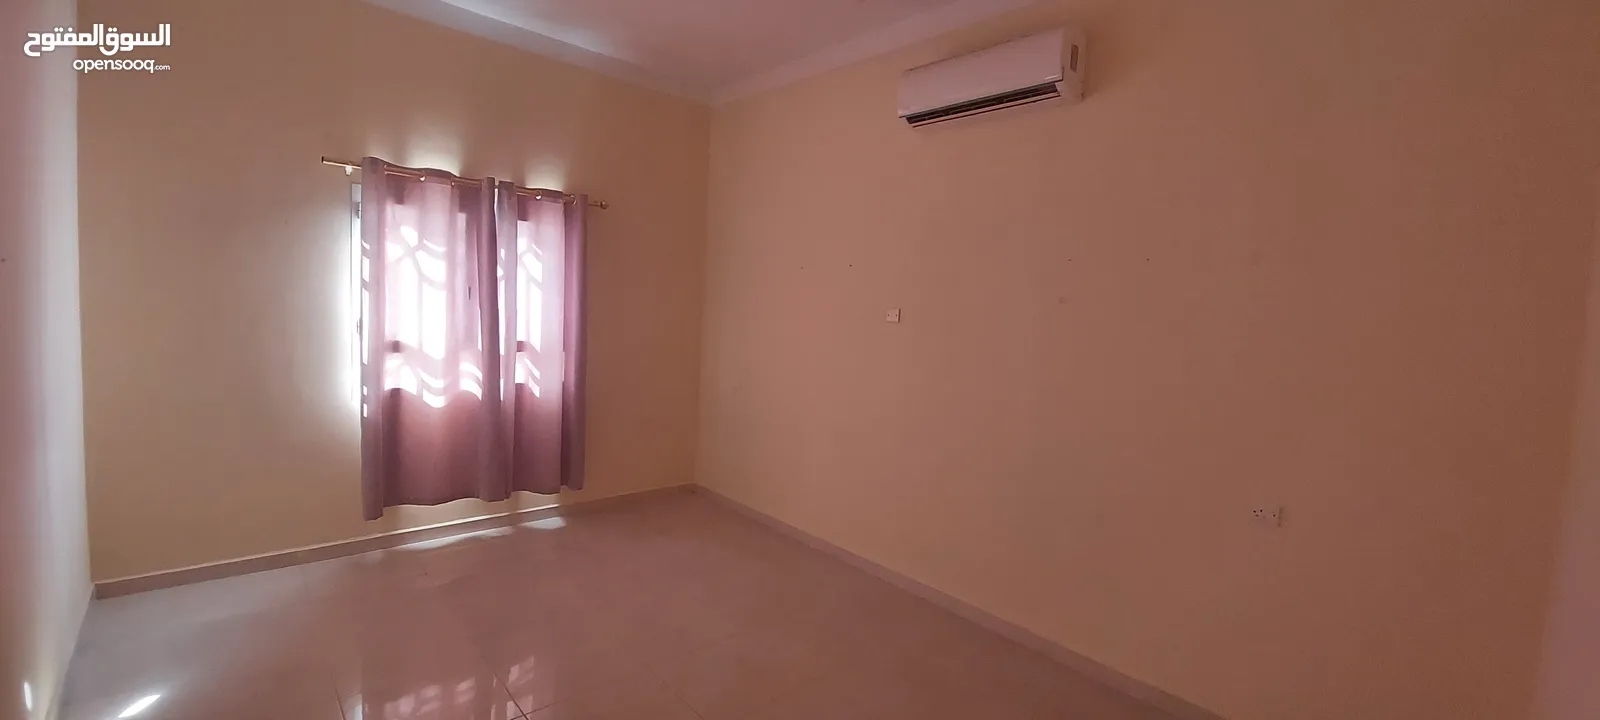 شقق ارضية للإيجار  صحار فلج القبائل Ground floor apartments for rent in Sohar, Falaj Al Qabail